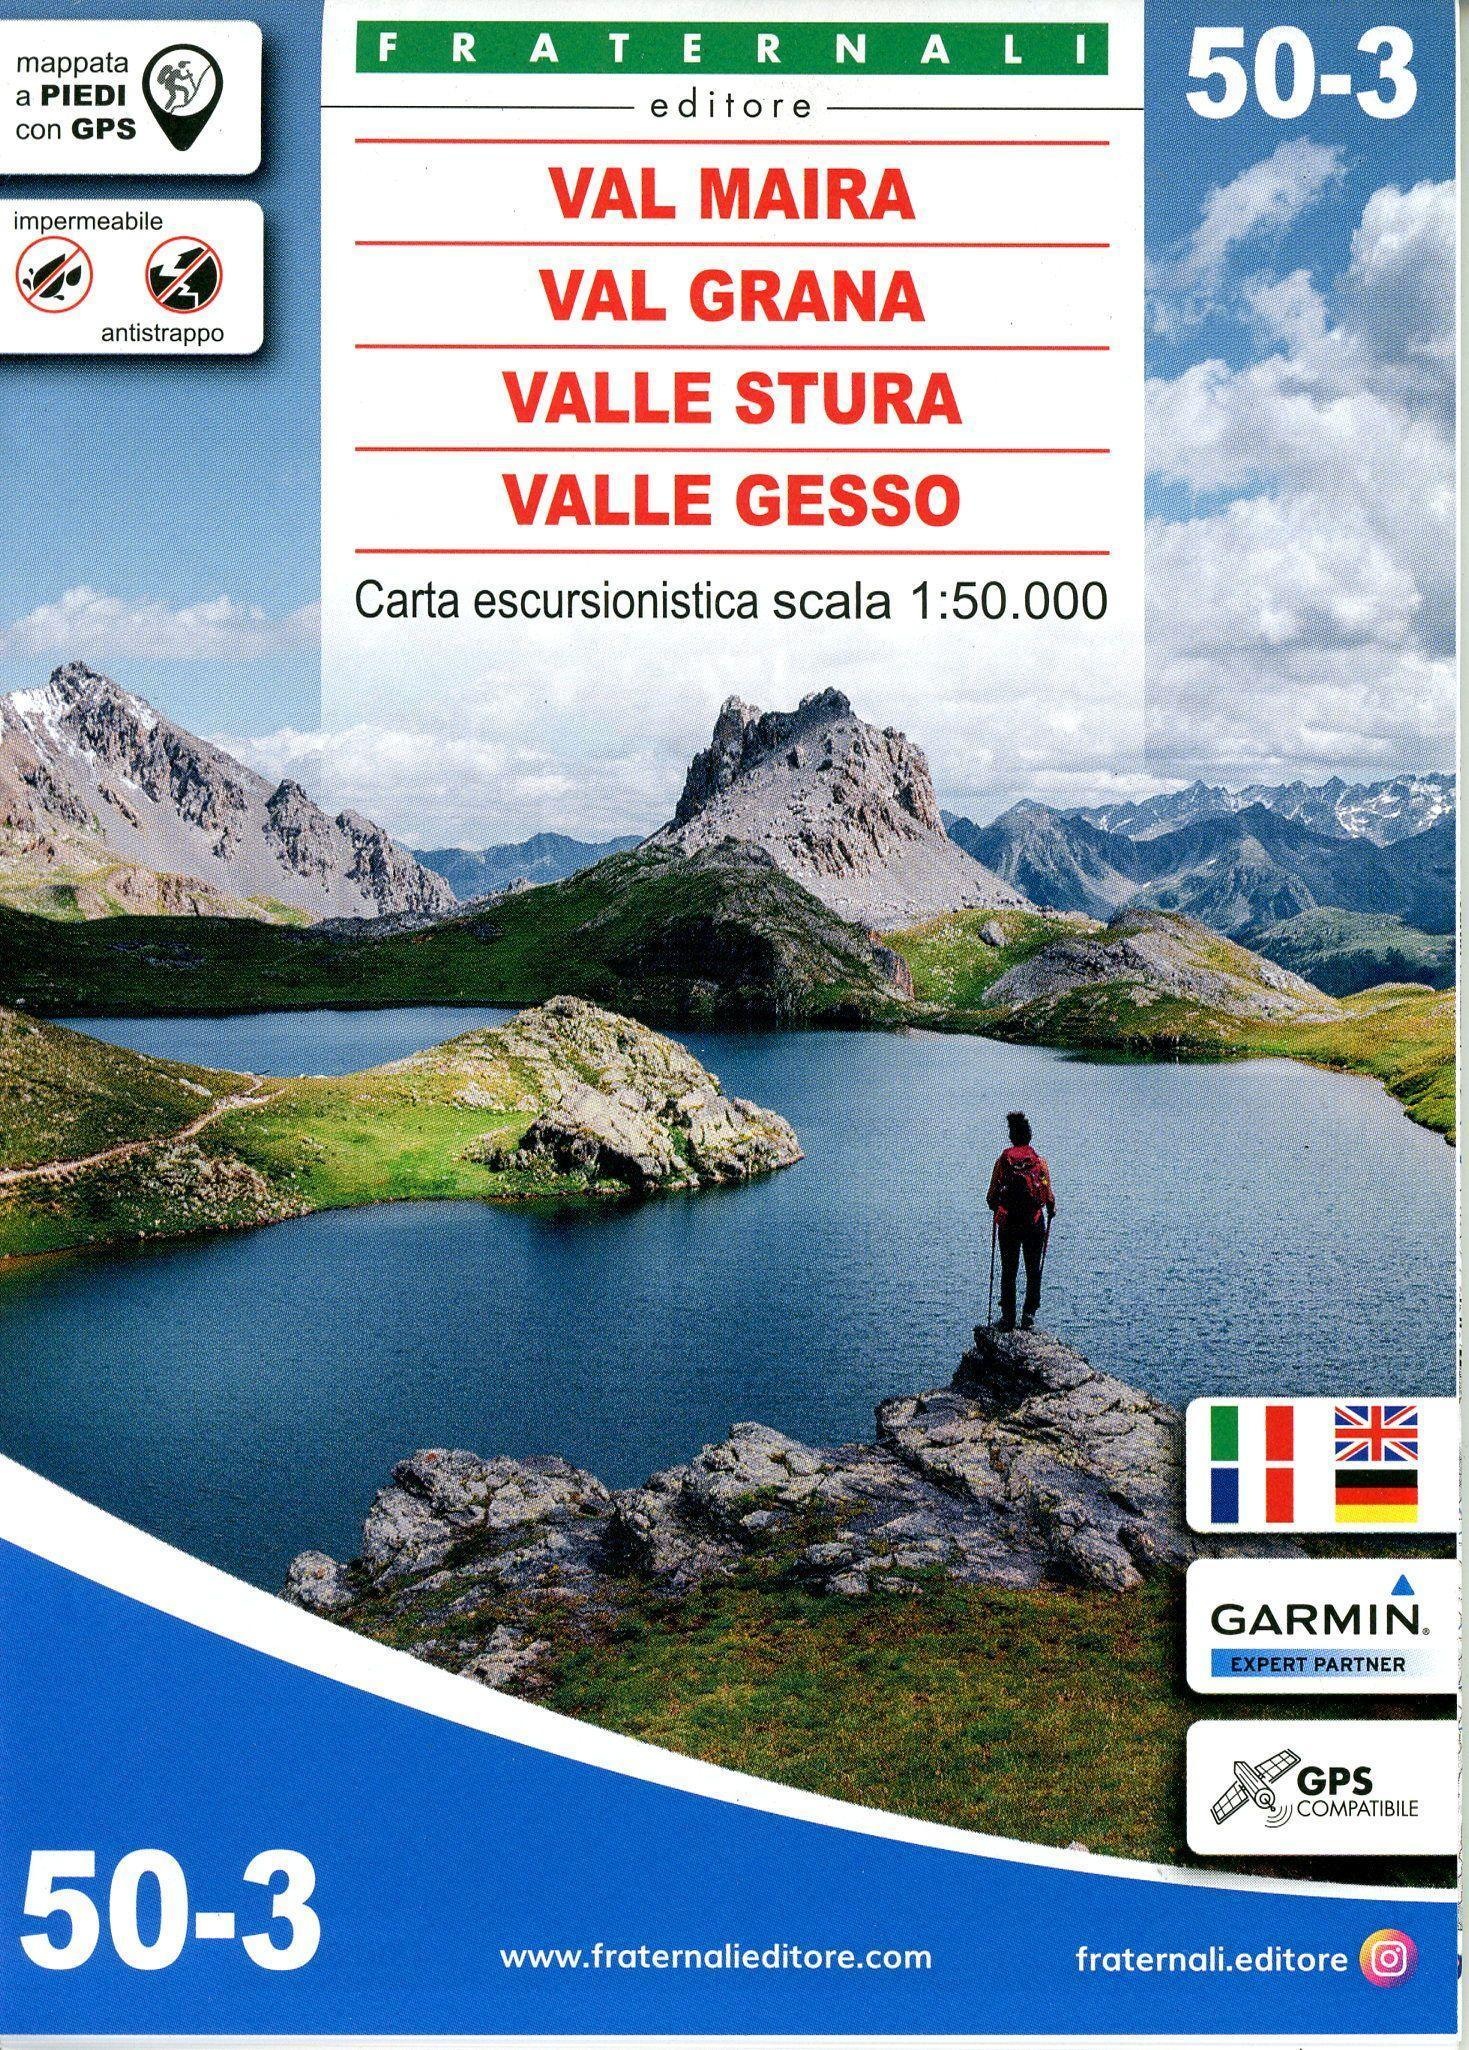 Val Maira - Val Grana - Valle Stura Di Demonte - Valle Gesso  Karte (im Sinne von Landkarte)